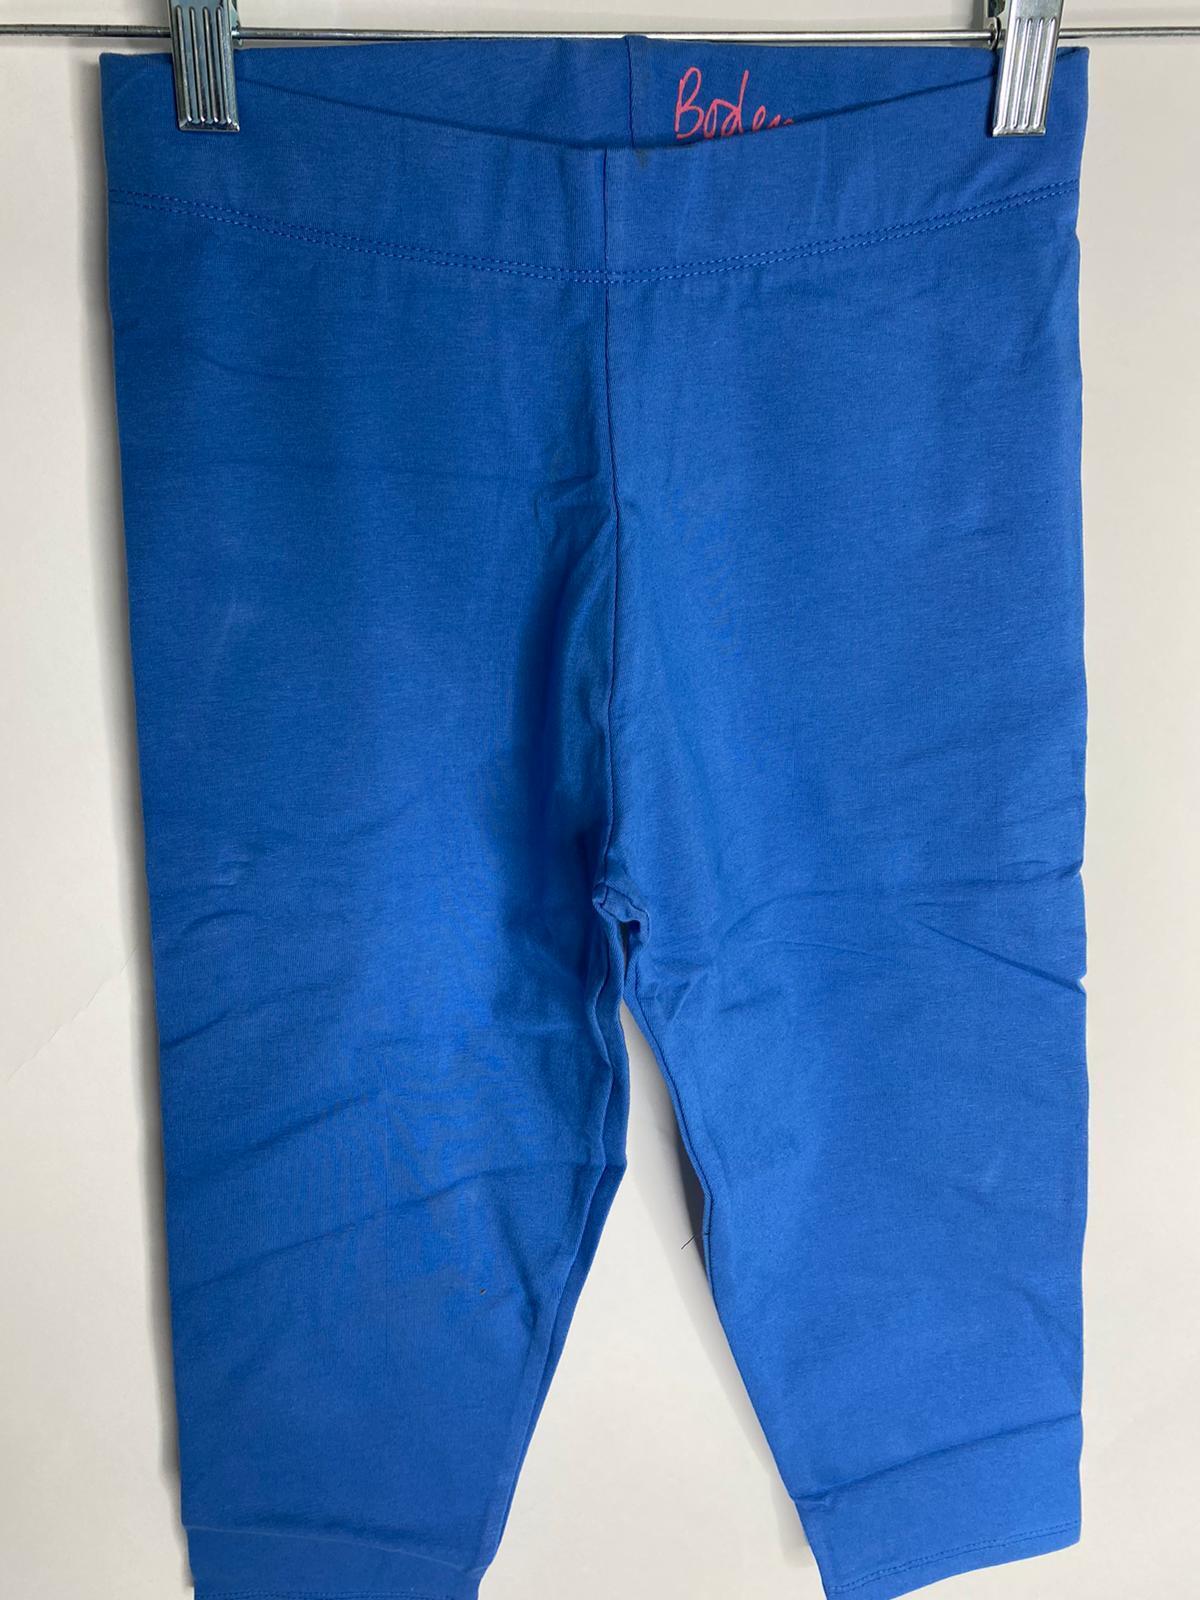 Boden Kids Girls 11-12 Blue Plain Cropped Legging G2686 Pull On Pant